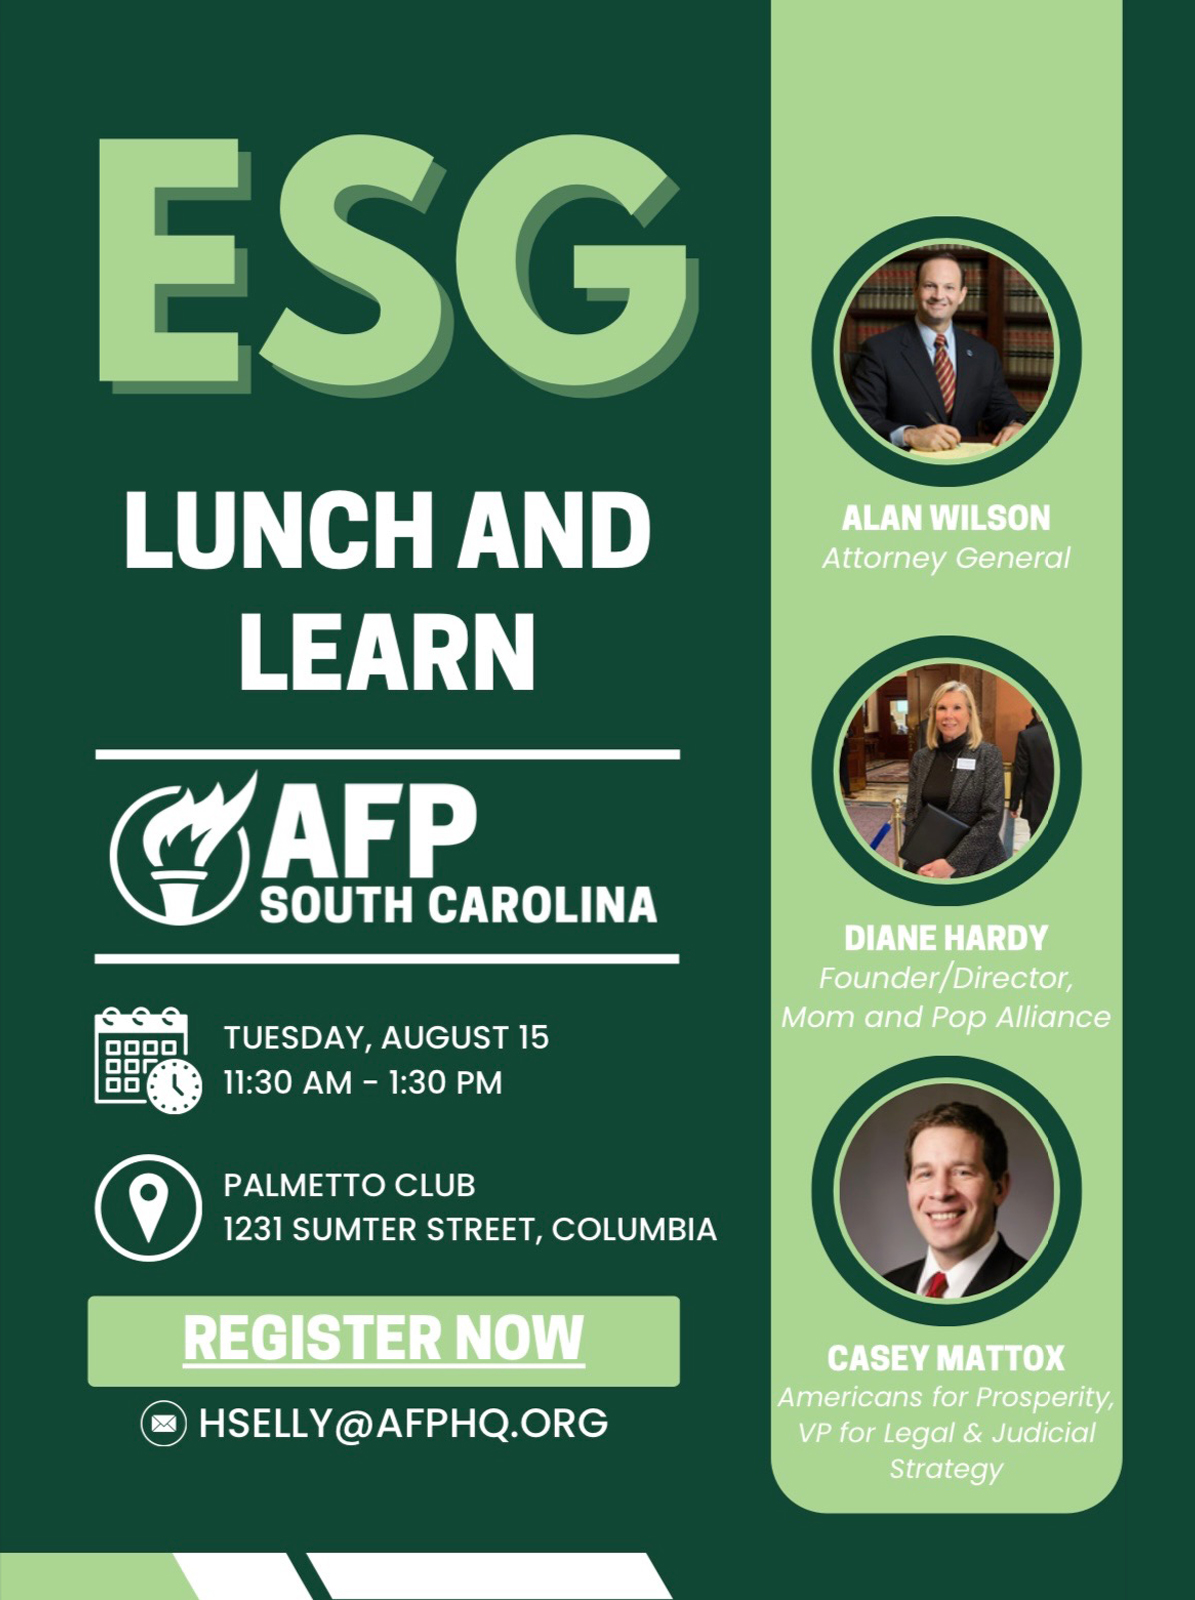 ESG-lunch-learn